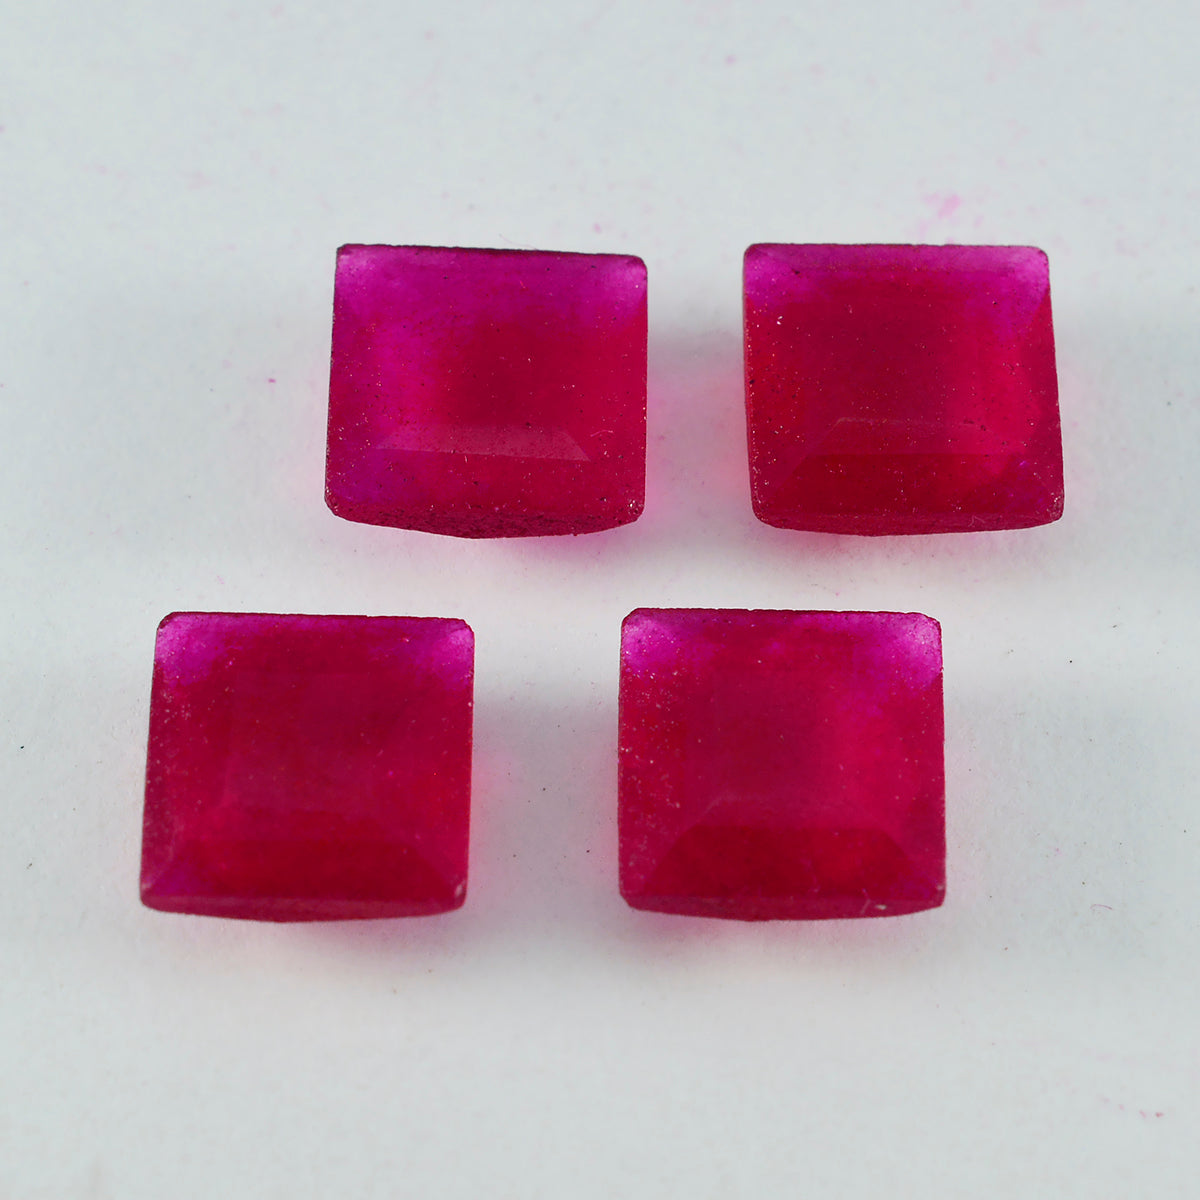 Riyogems 1 Stück natürlicher roter Jaspis, facettiert, 12 x 12 mm, quadratische Form, gut aussehender Qualitätsstein